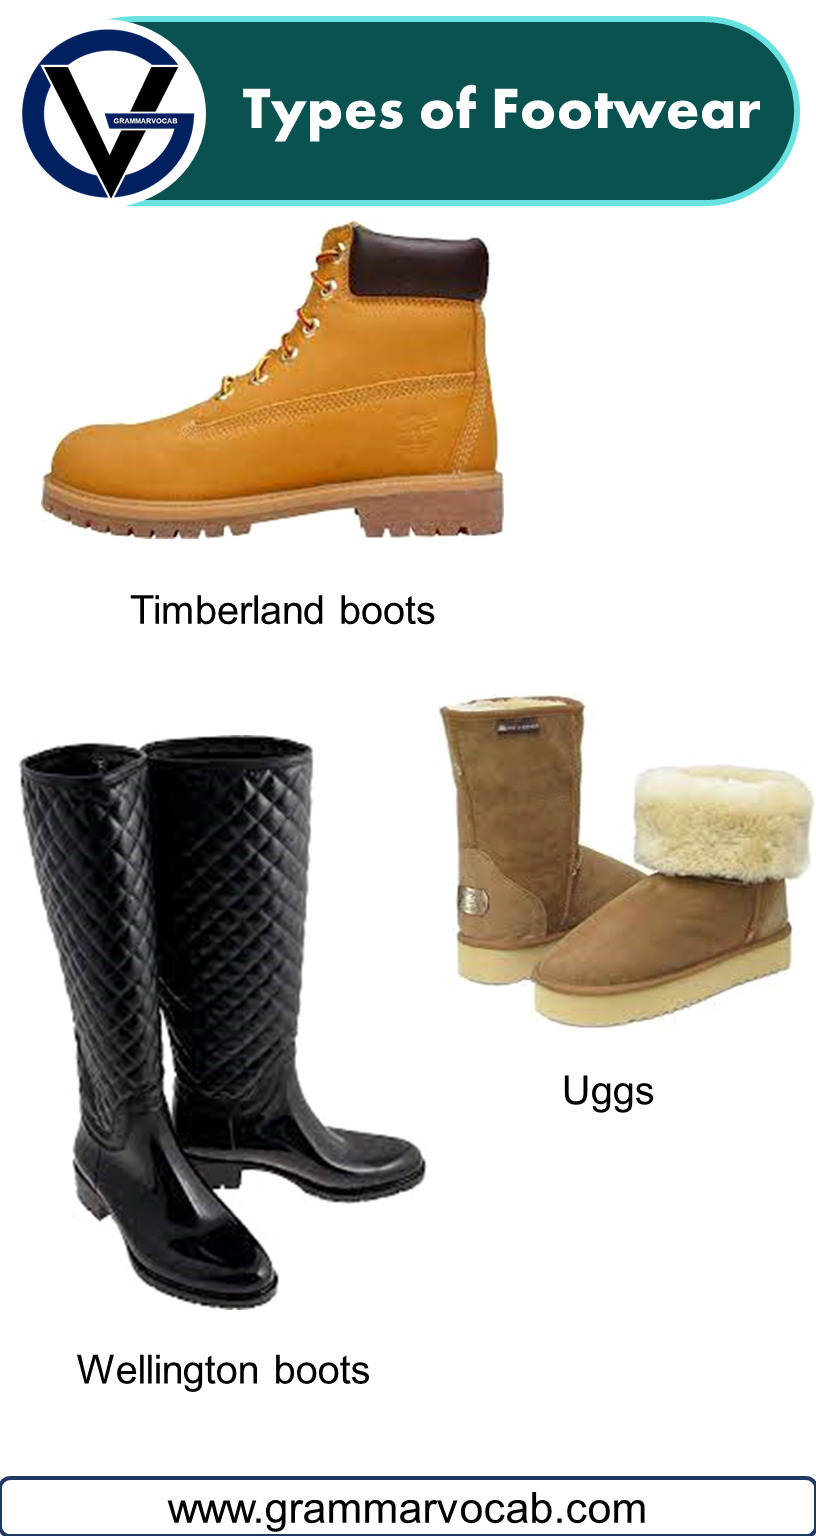 Types of Footwear